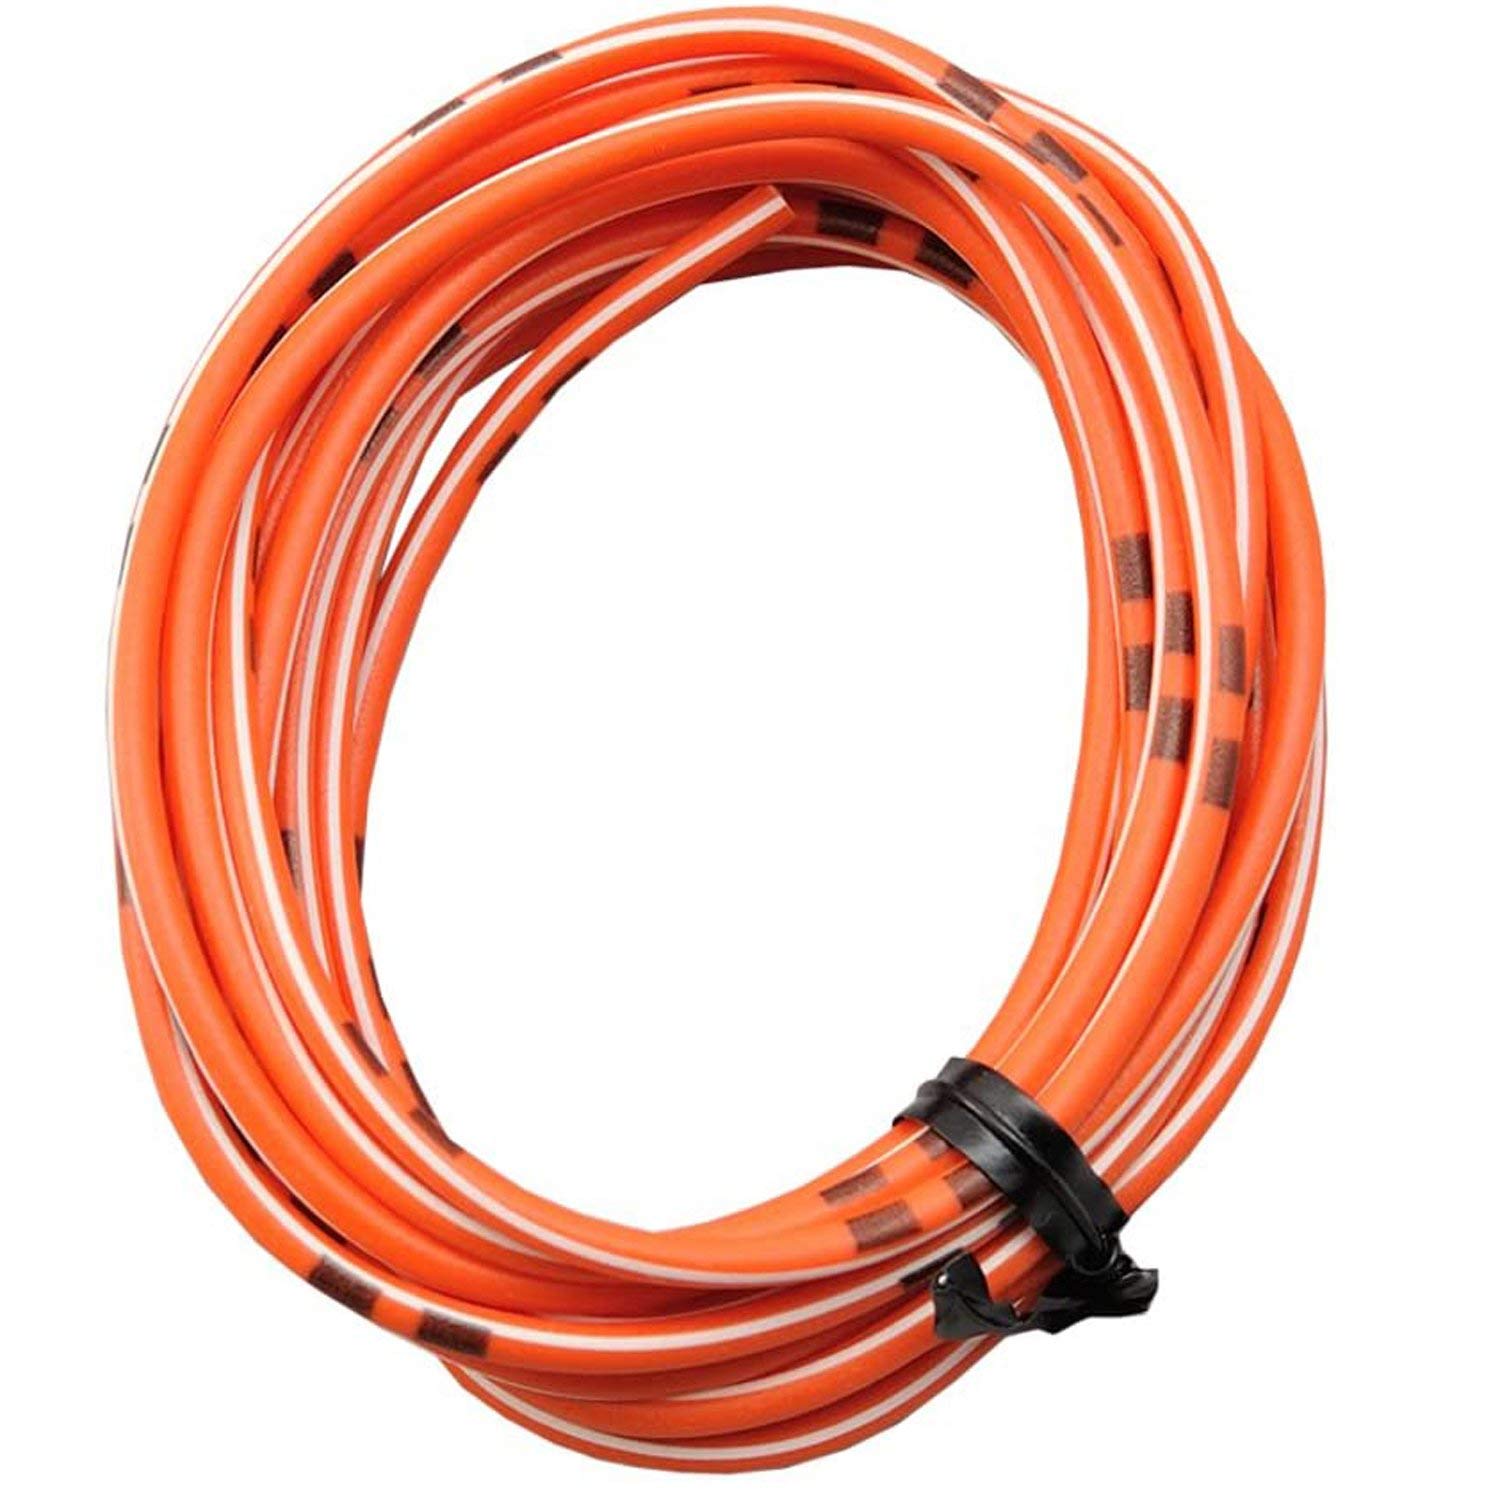 DAYTONA farbiges Kabel AWG18 0.75qmm, 2 Meter, orange/weiß von Daytona